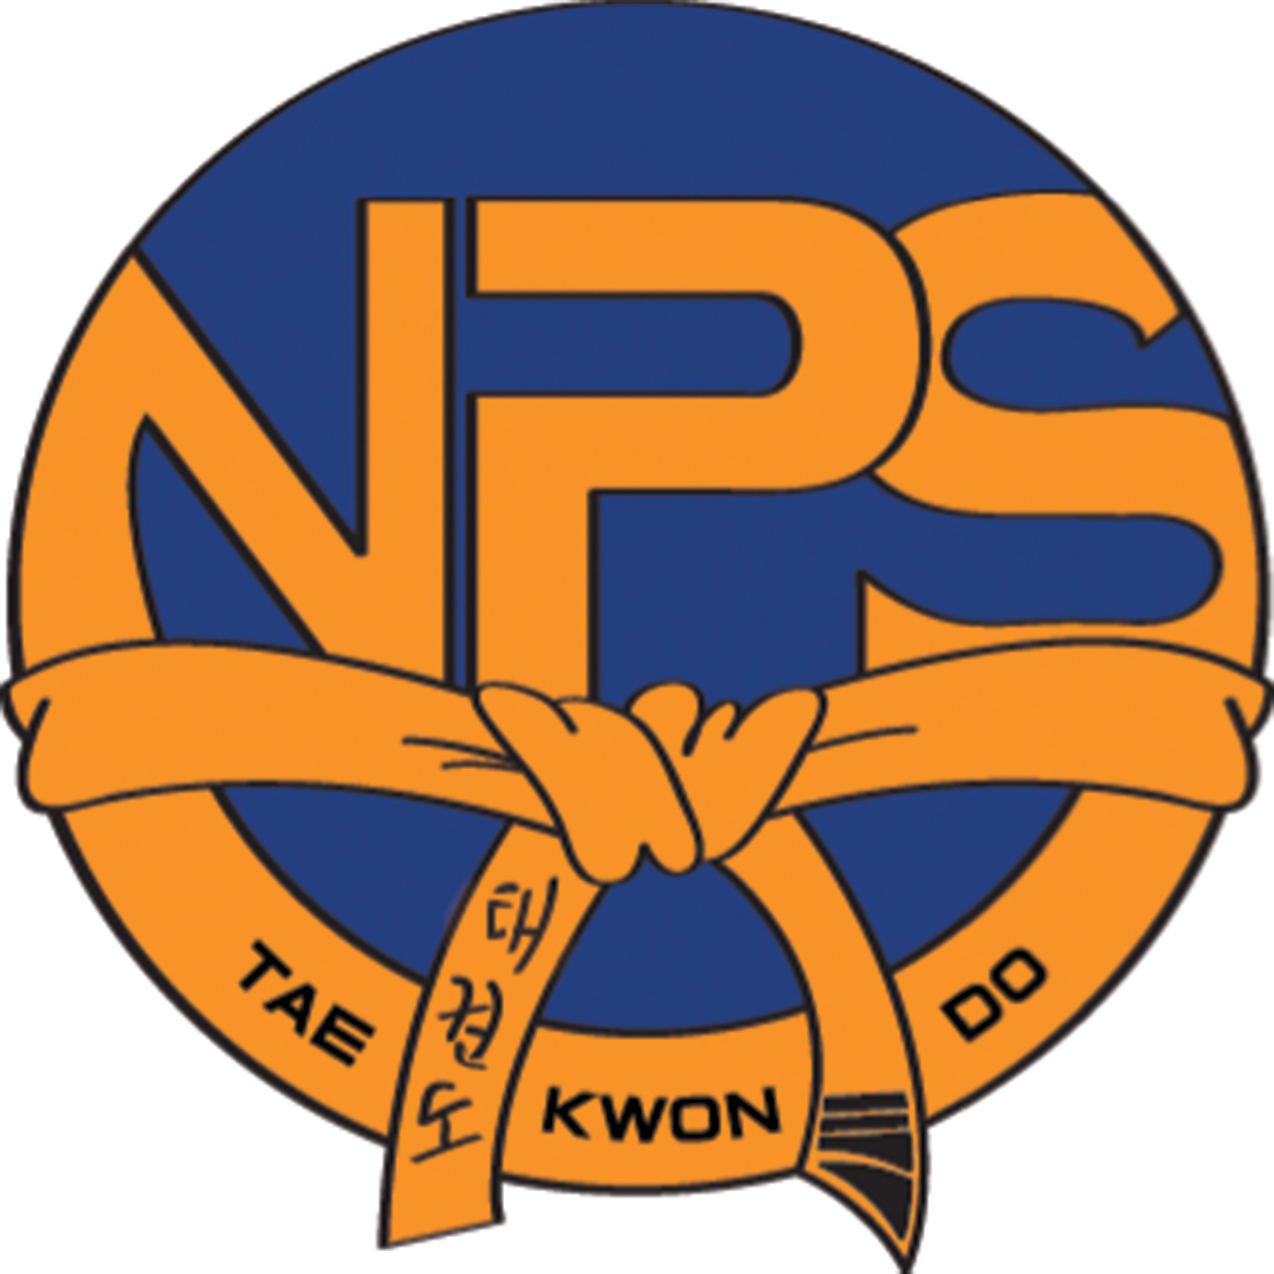 NPS TAEKWONDO 2019